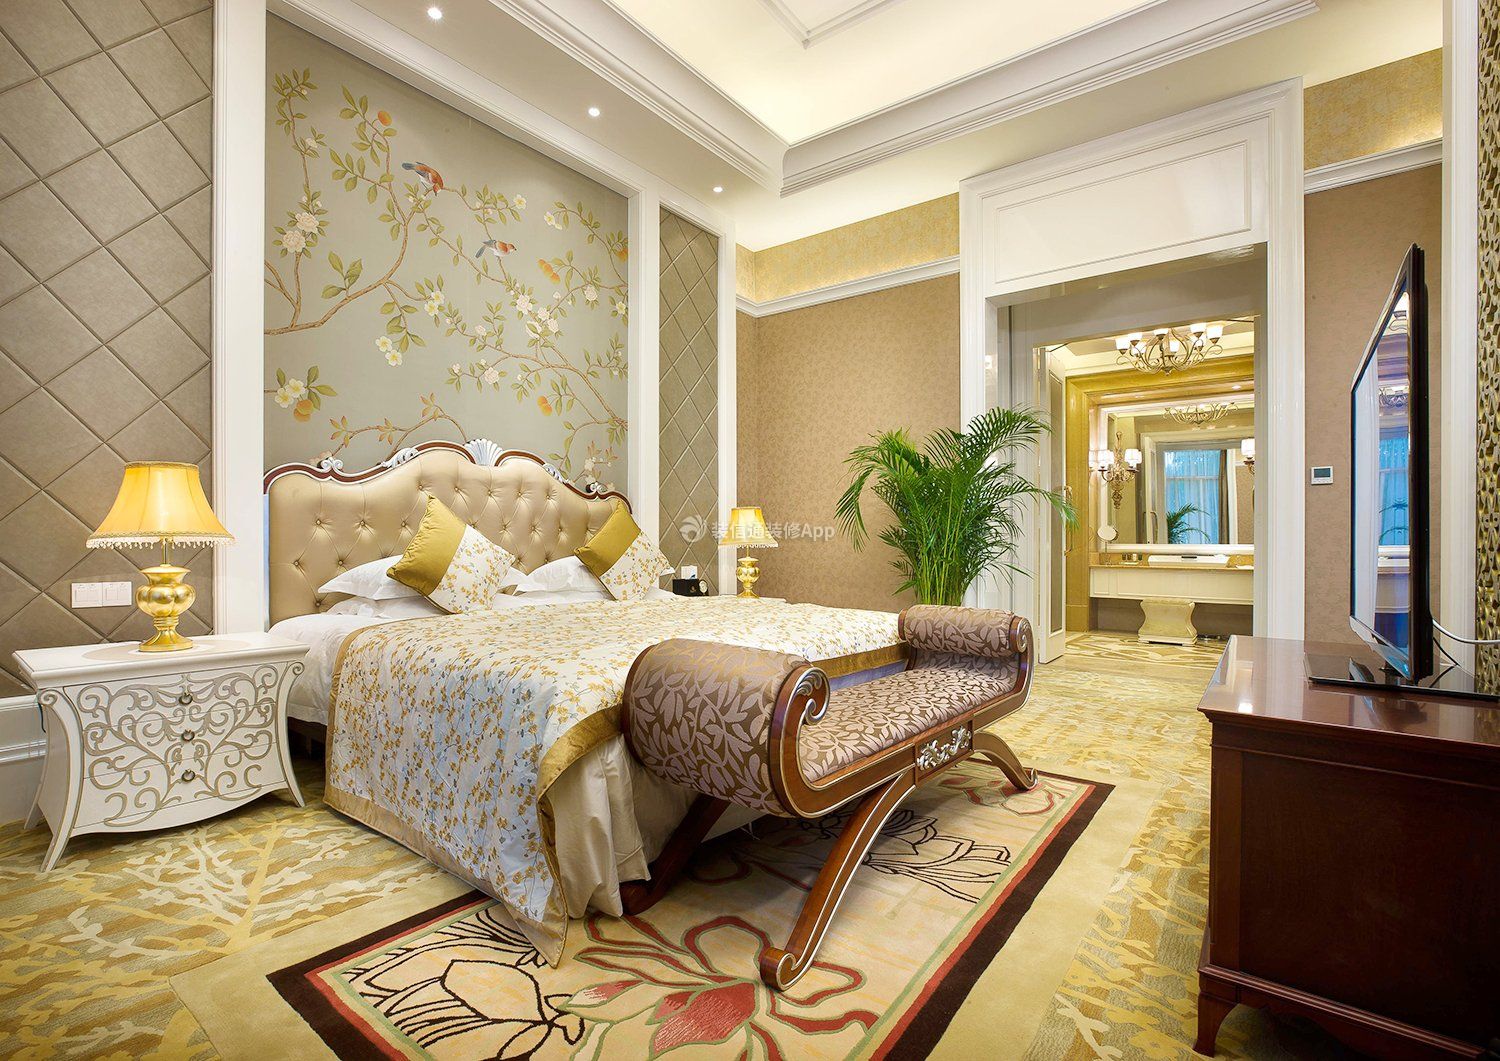 上海欧式风格酒店客房装修图片